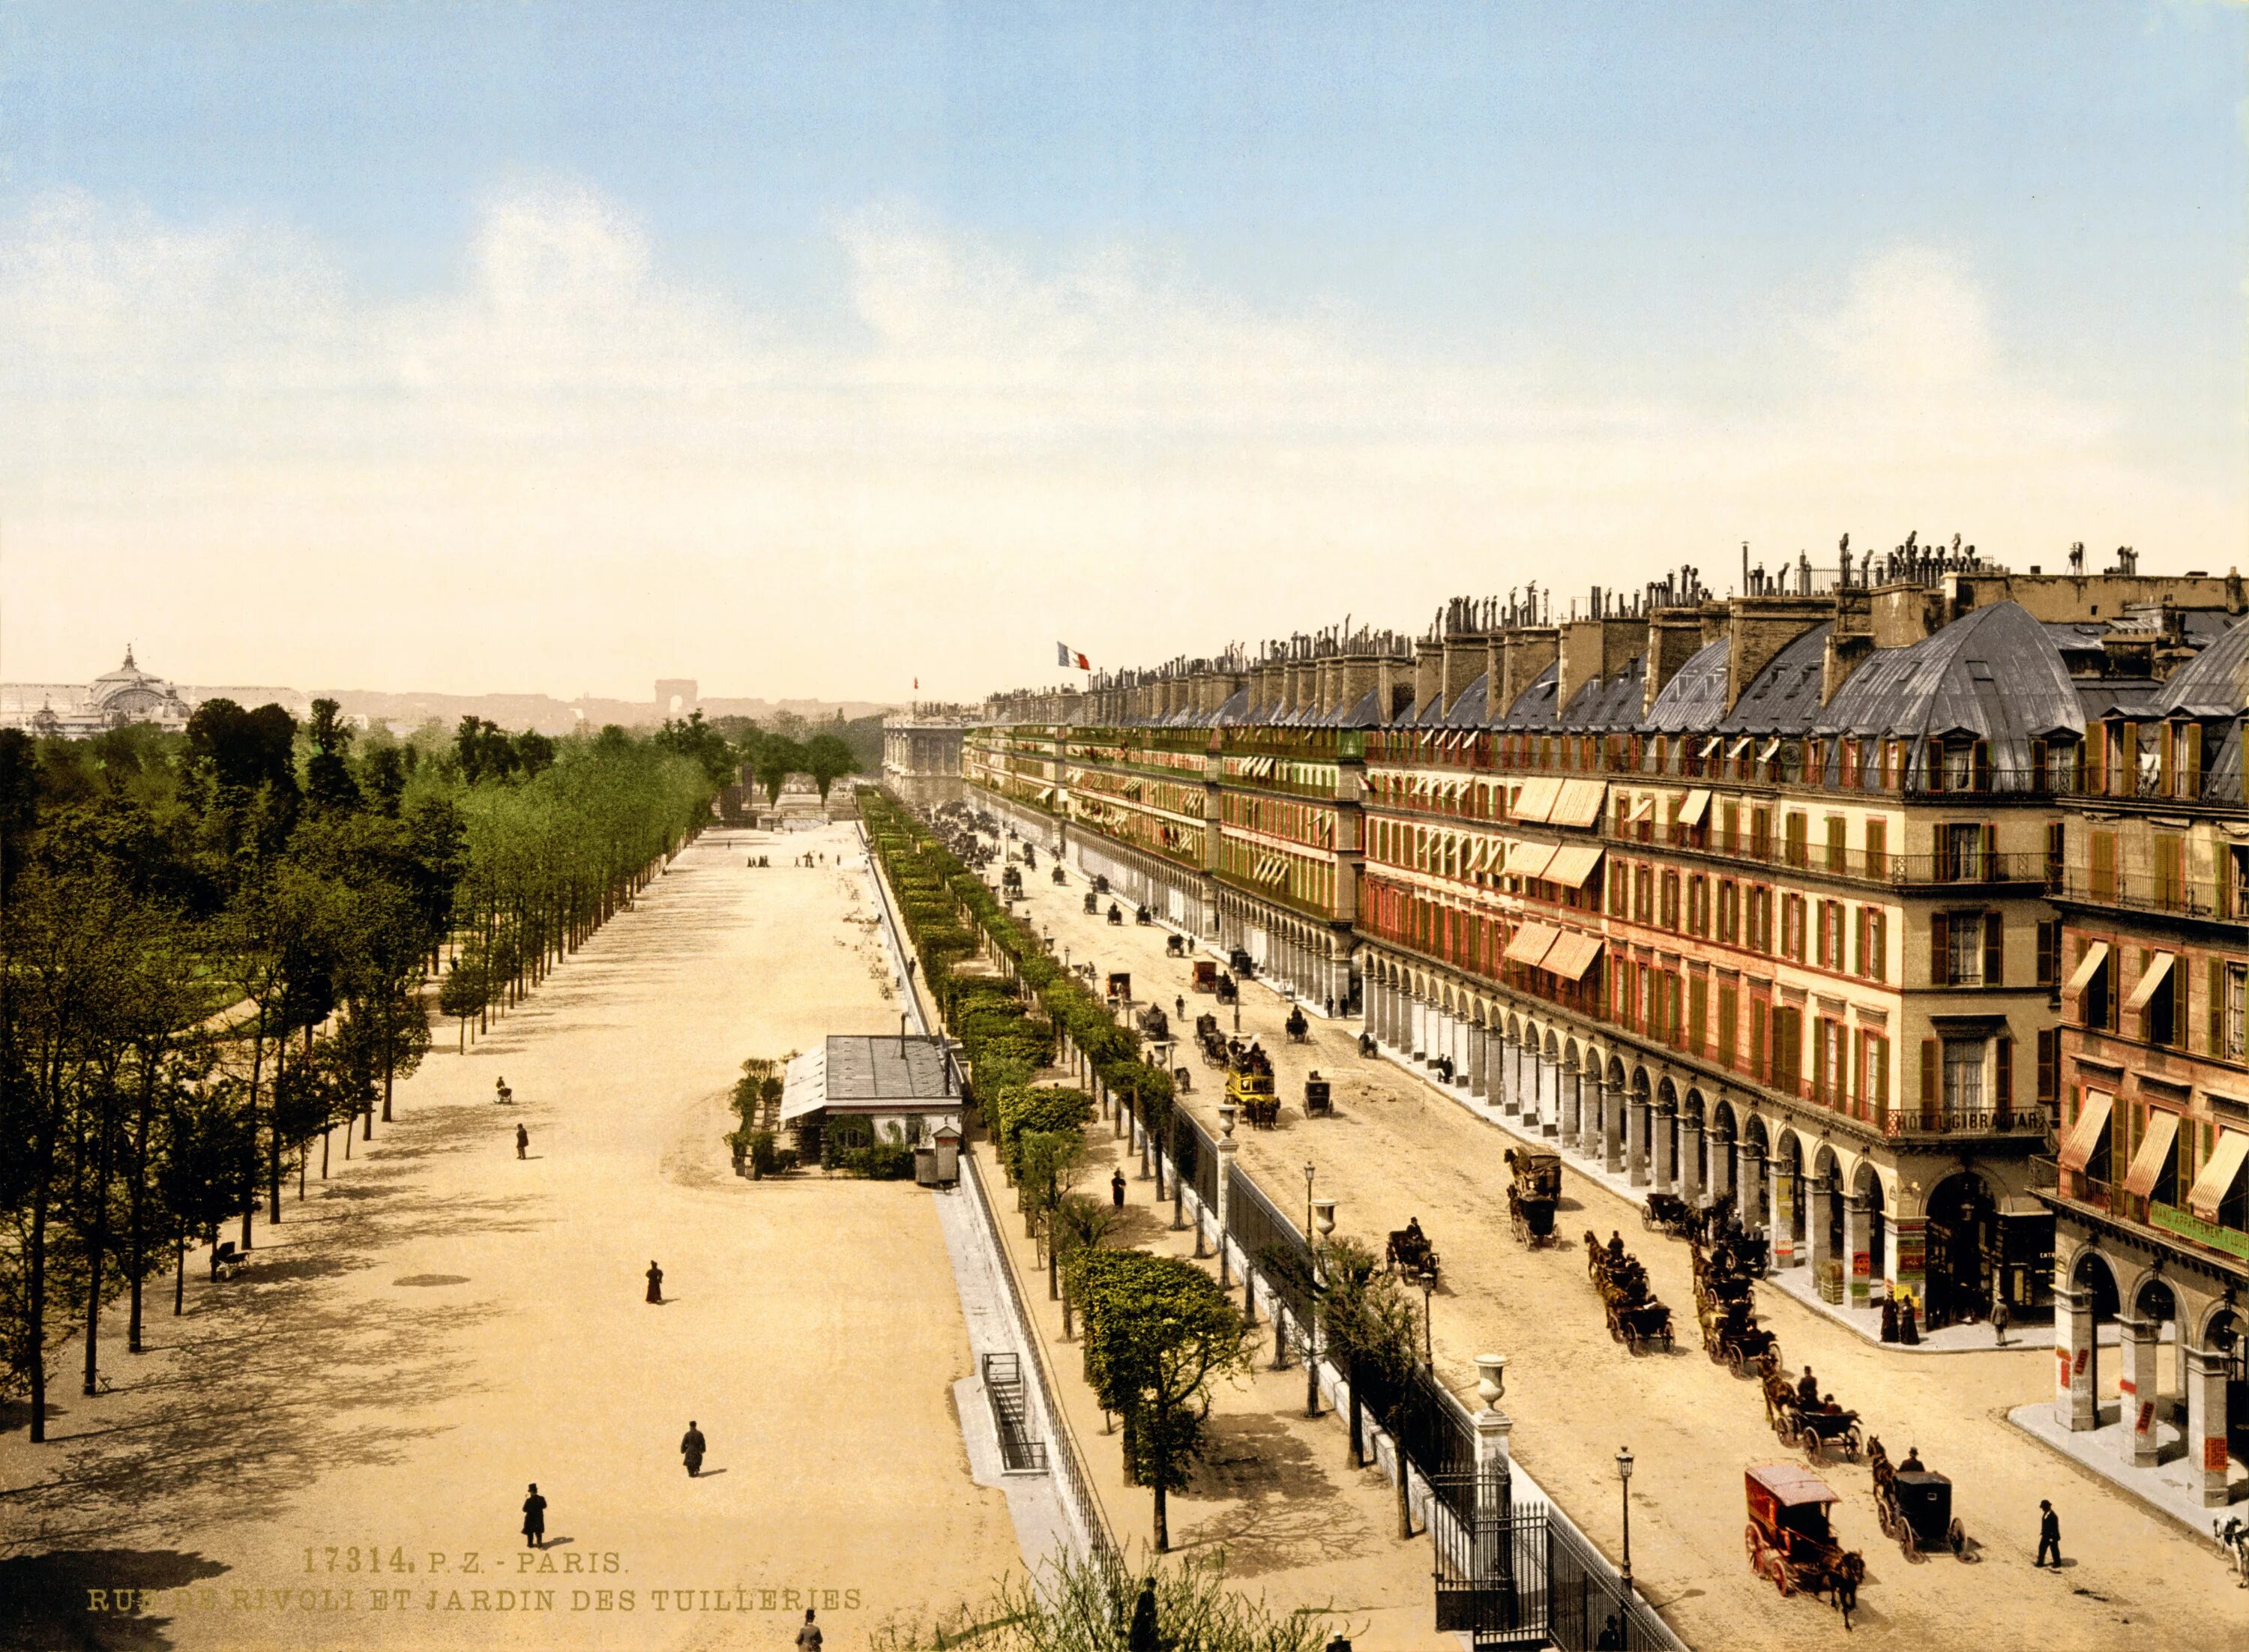 Улица риволи в Париже. Улица риволи в Франции. Улица риволи в Париже 19 века. Улицы Франции 19 век.